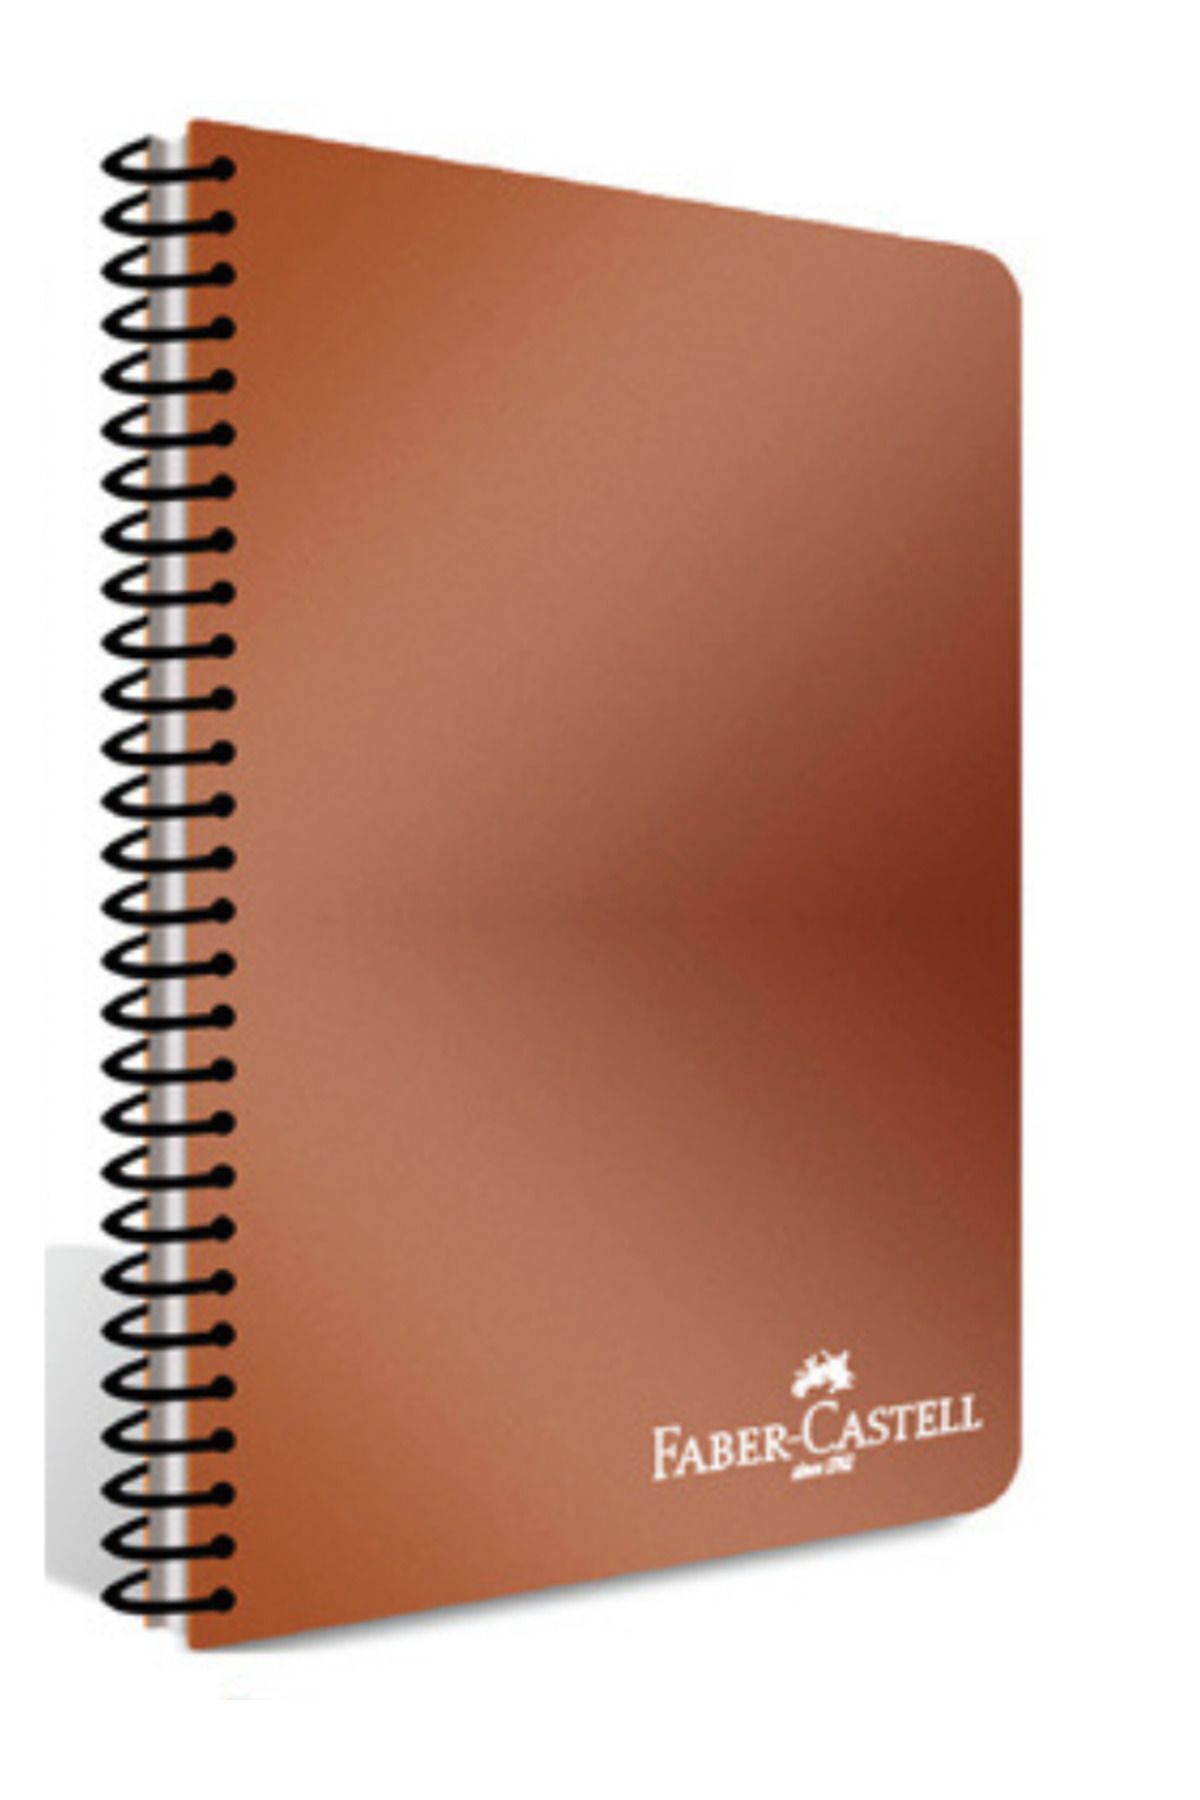 Faber Castell PLASTİK KAPAKLI SPİRALLİ DEFTER METALİK RENKLER A4 120 YP. ÇİZGİSİZ – METALİK KİREMİT